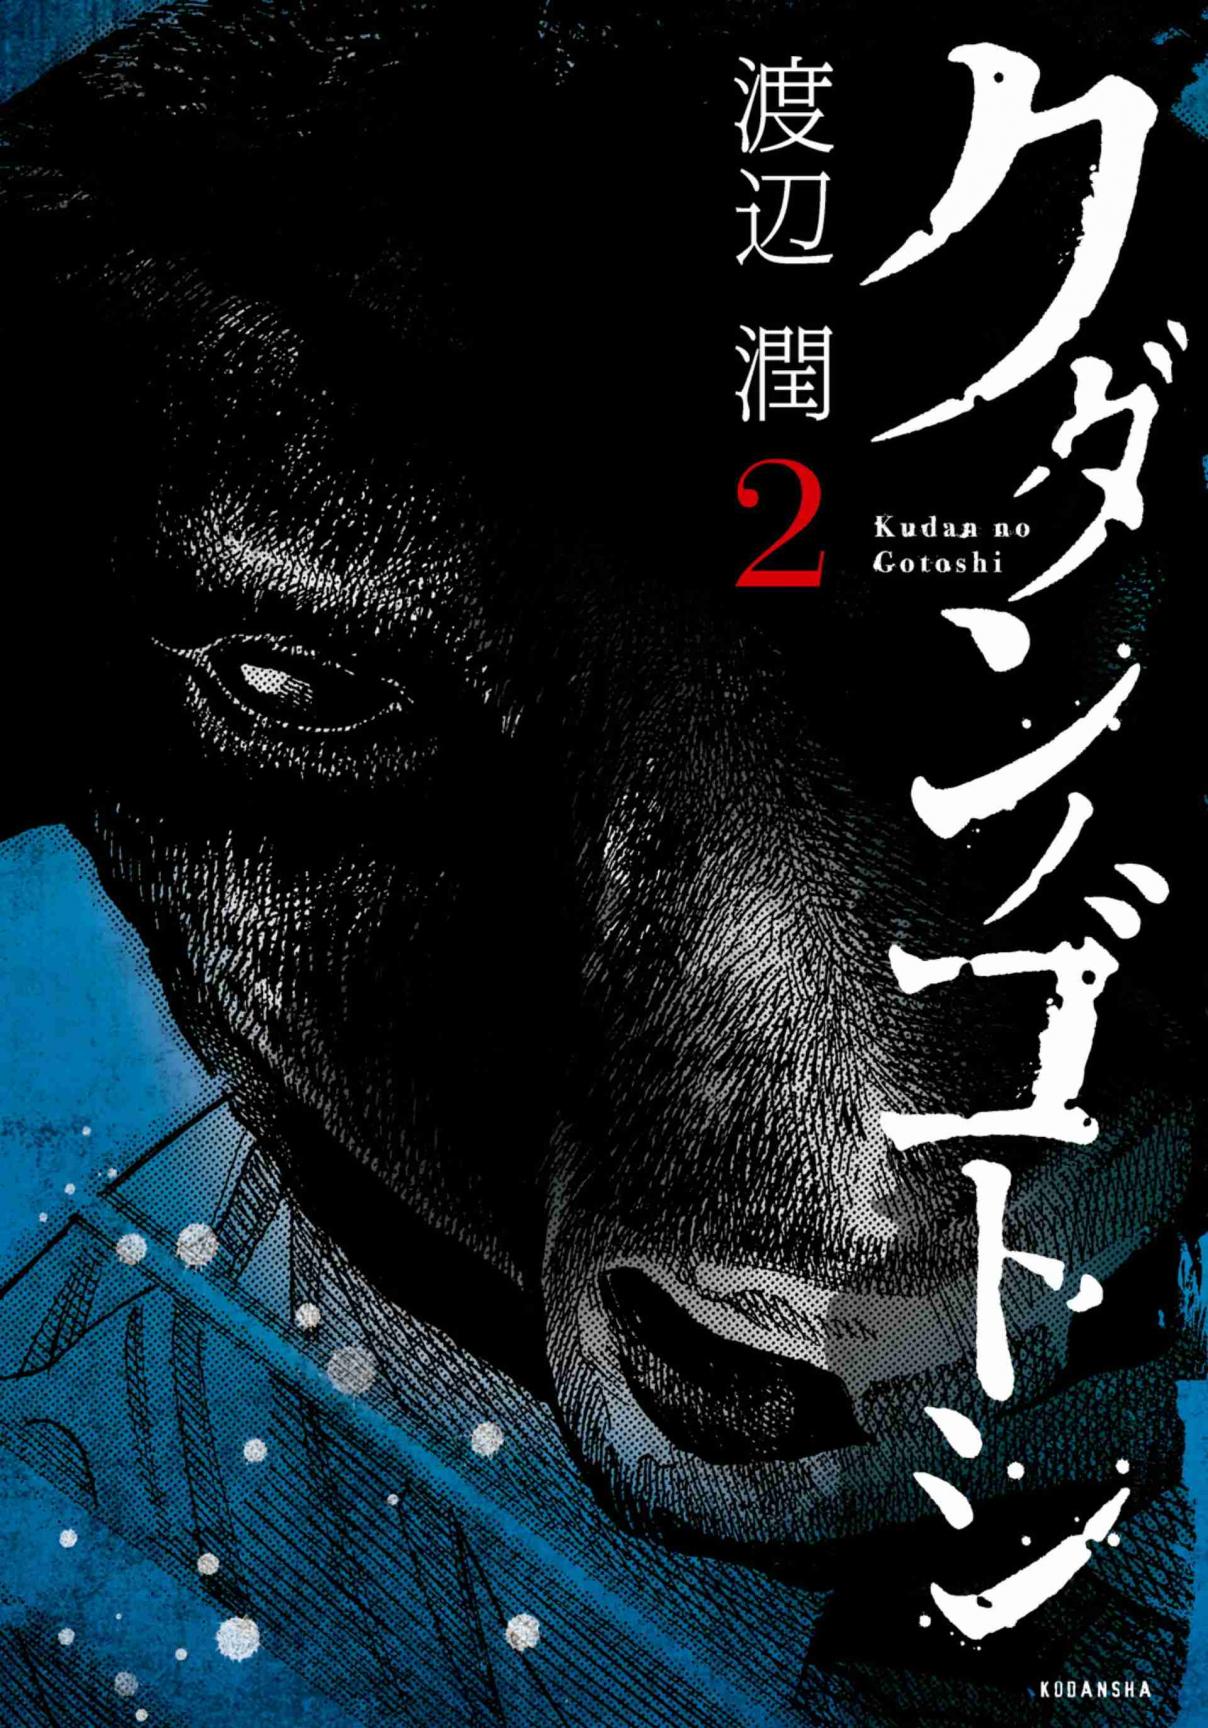 Kudan no Gotoshi Vol. 2 Ch. 11 Ayumi Baba < Part 5 >